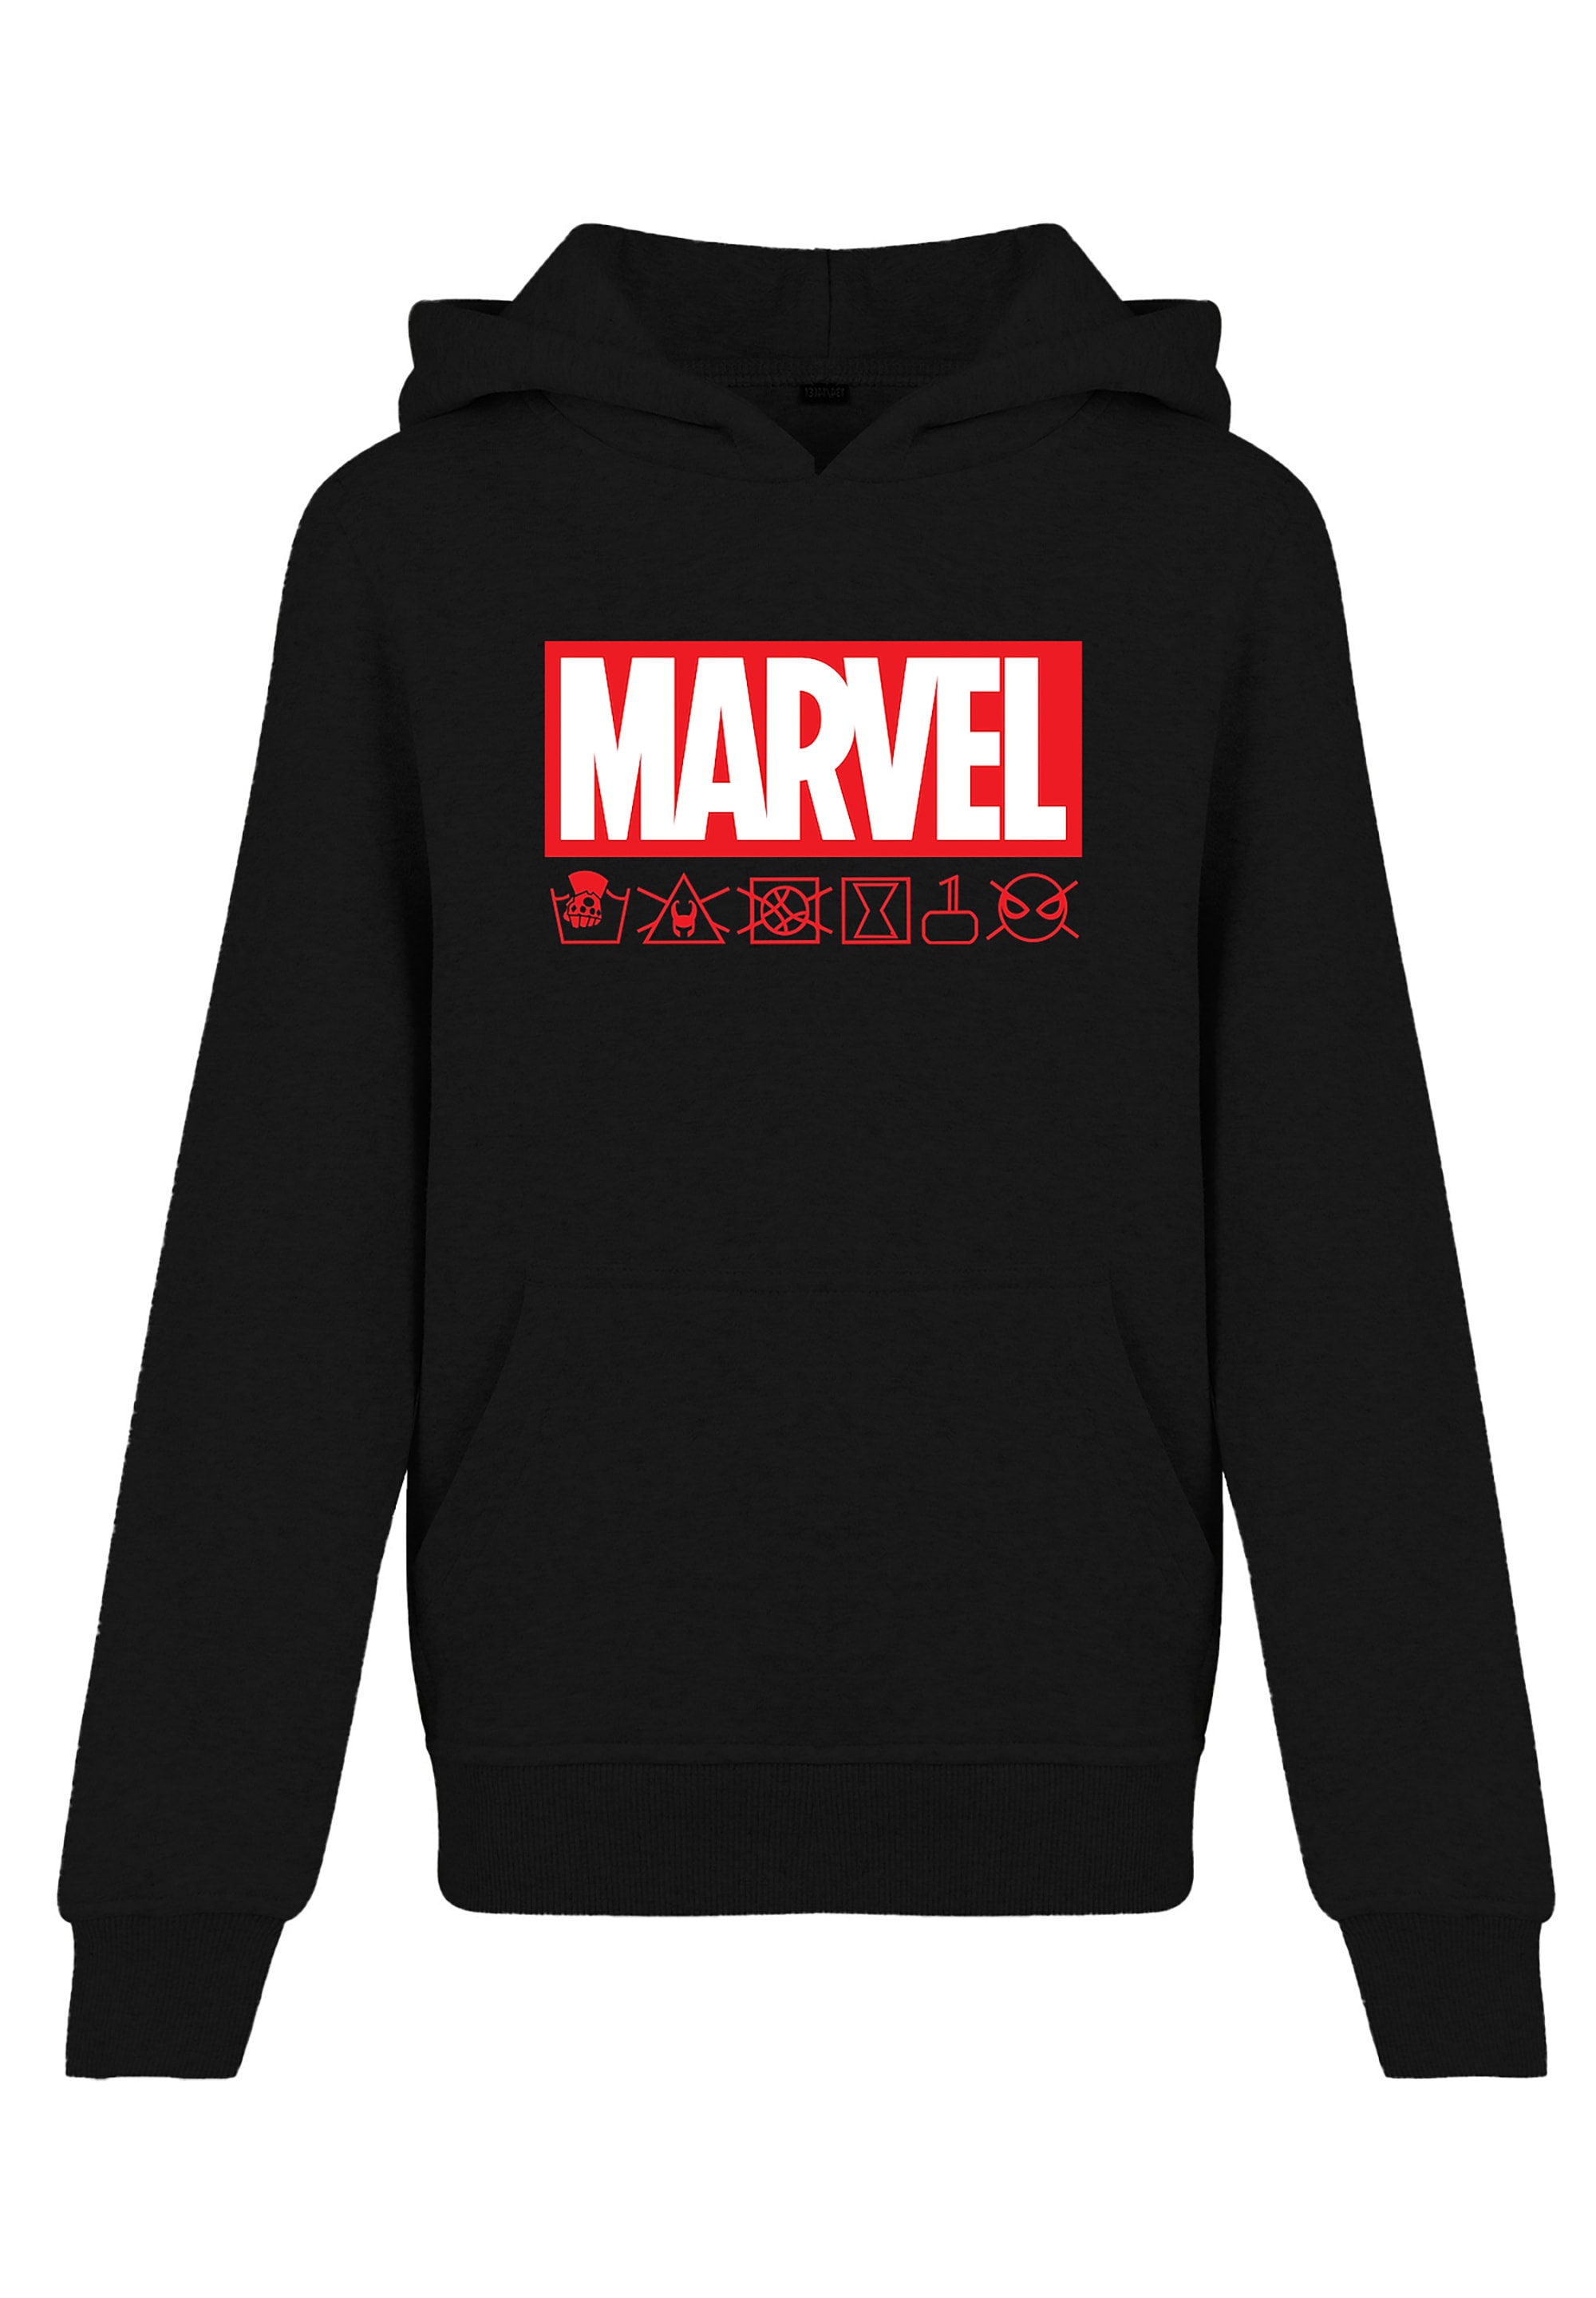 »Marvel bestellen | Kapuzenpullover BAUR Waschsymbole«, Logo Print F4NT4STIC online